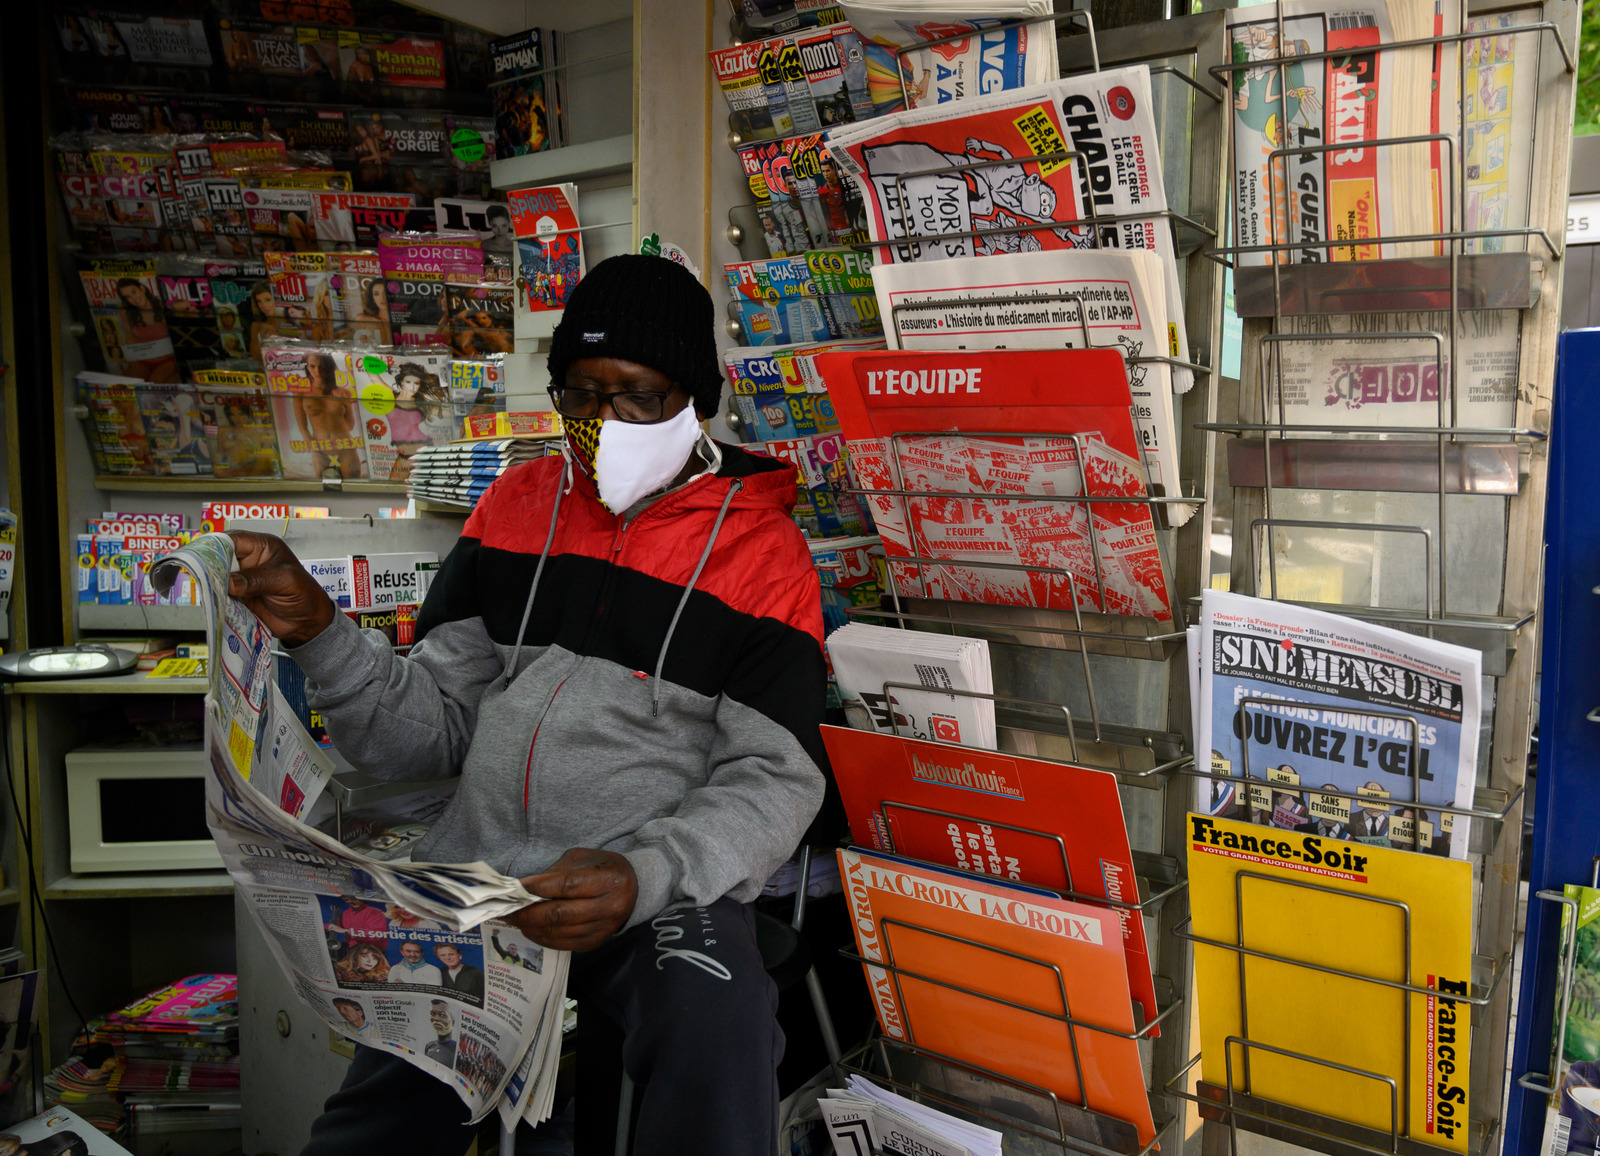 Un marchand de journaux lit le quotidien "La Provence" dans son kiosque à Marseille.